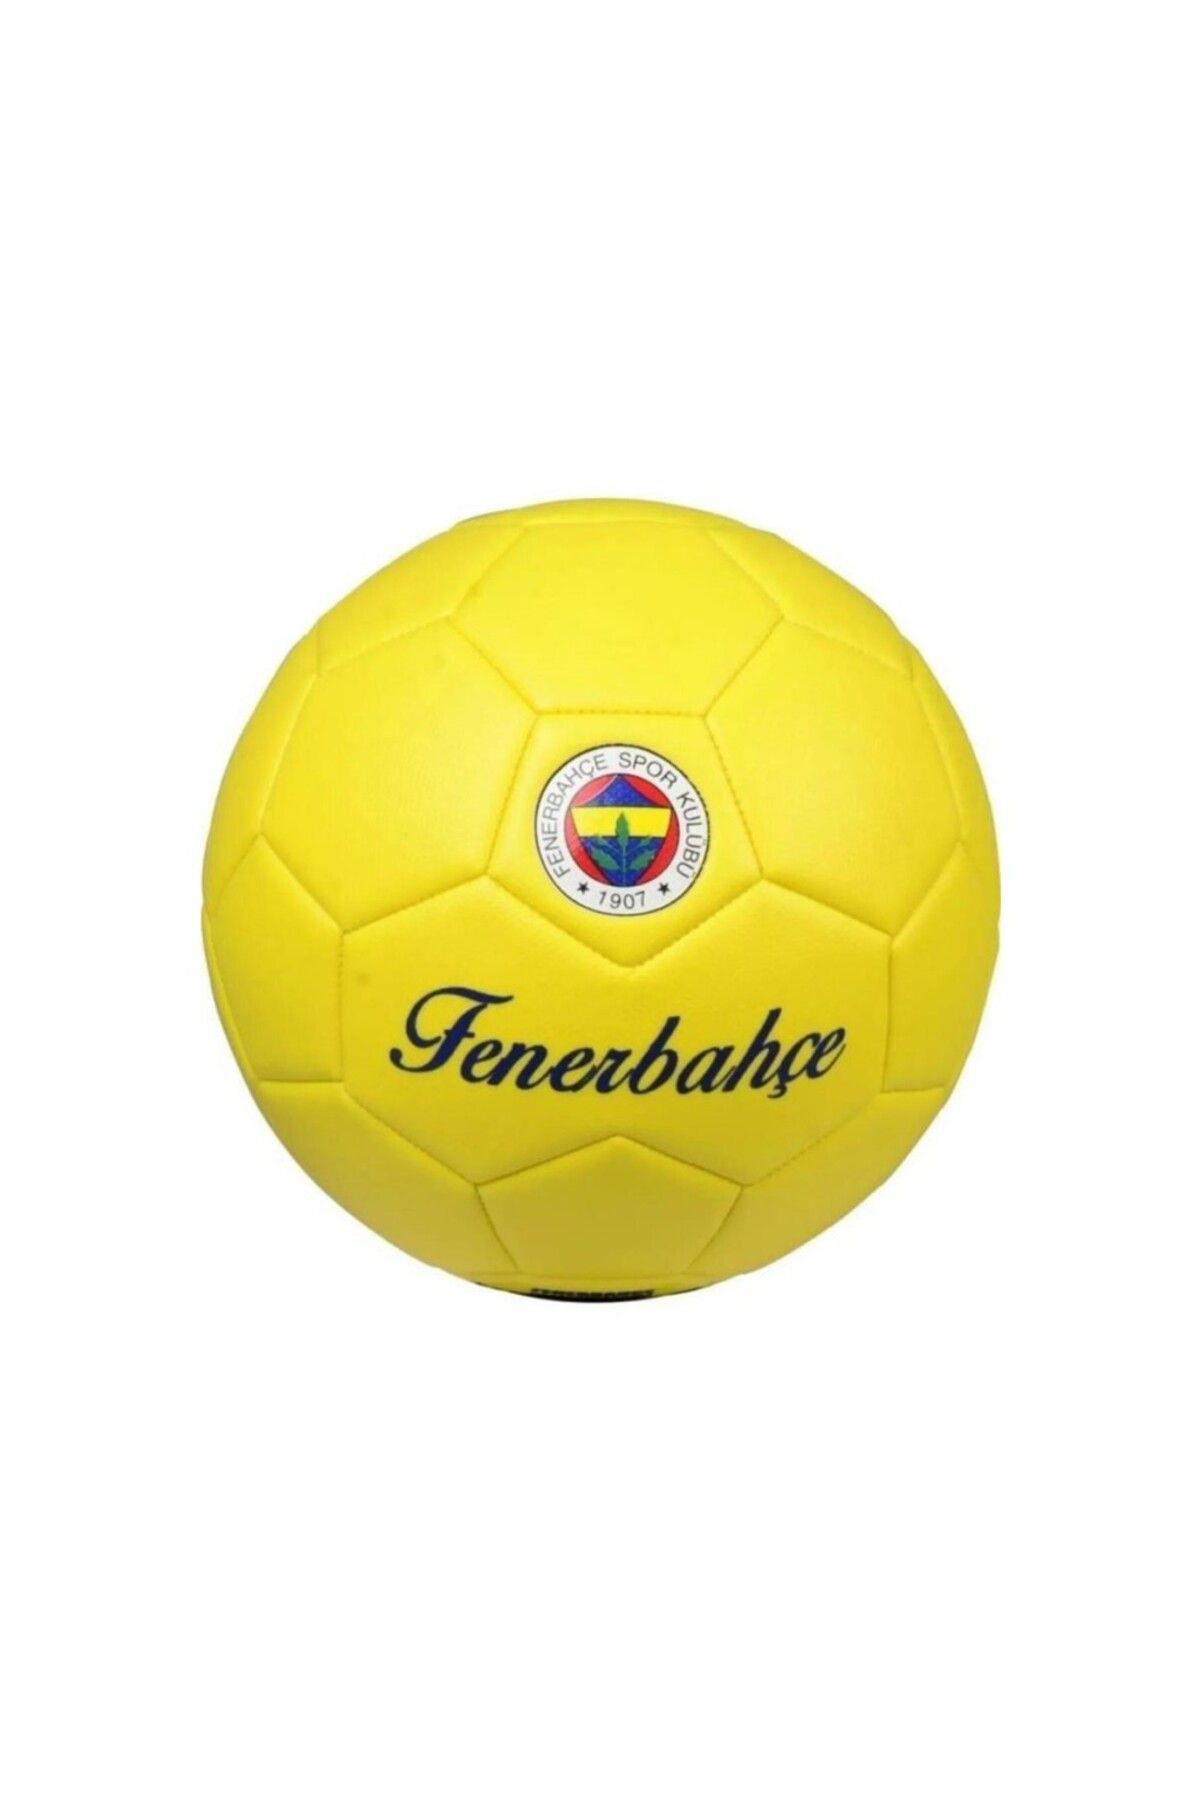 Fenerbahçe Premıum Futbol Topu No:5 Sarı